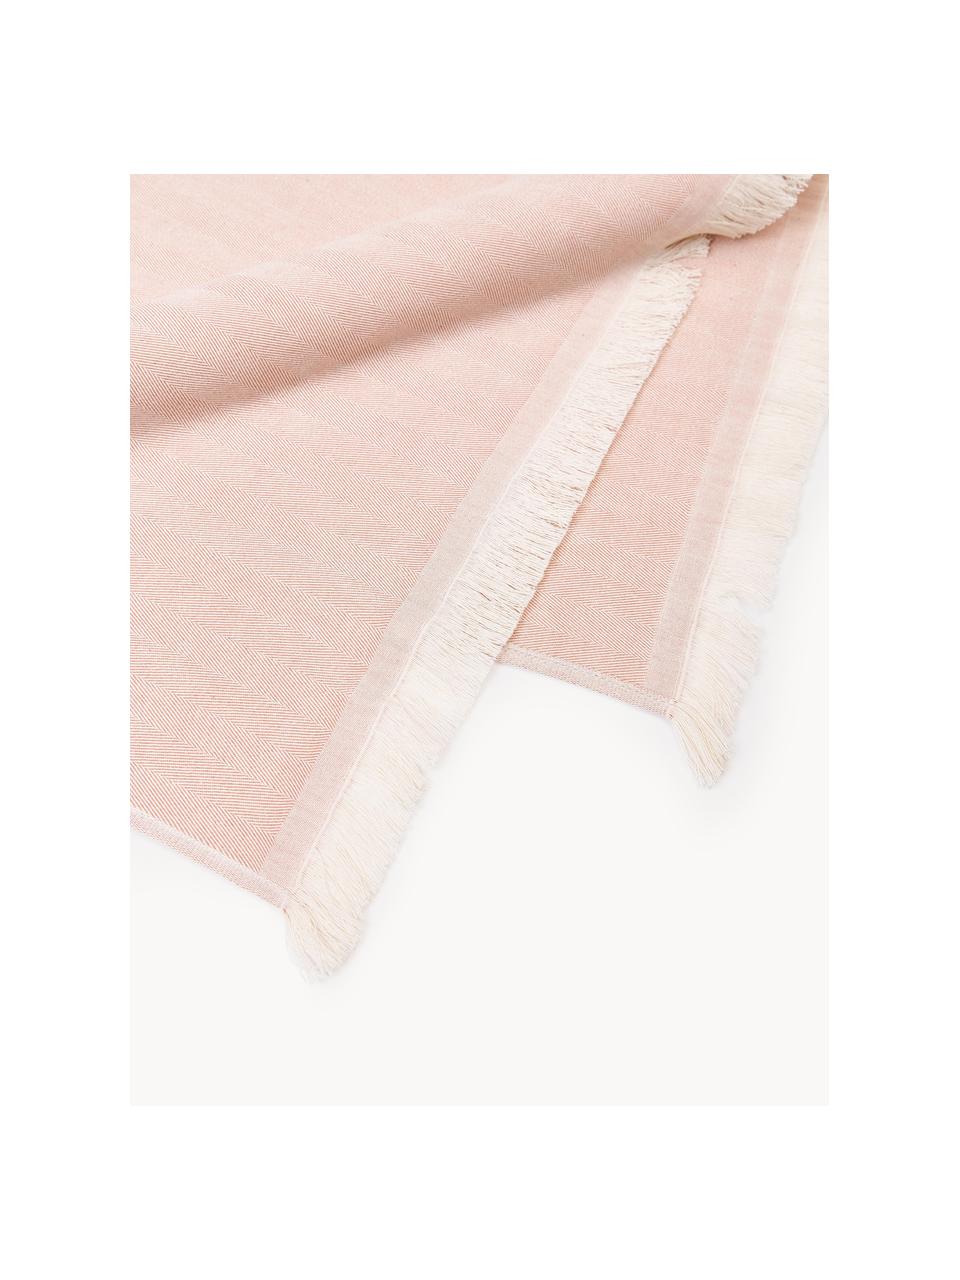 Ręcznik plażowy Indra, Brudny różowy, złamana biel, S 100 x D 180 cm